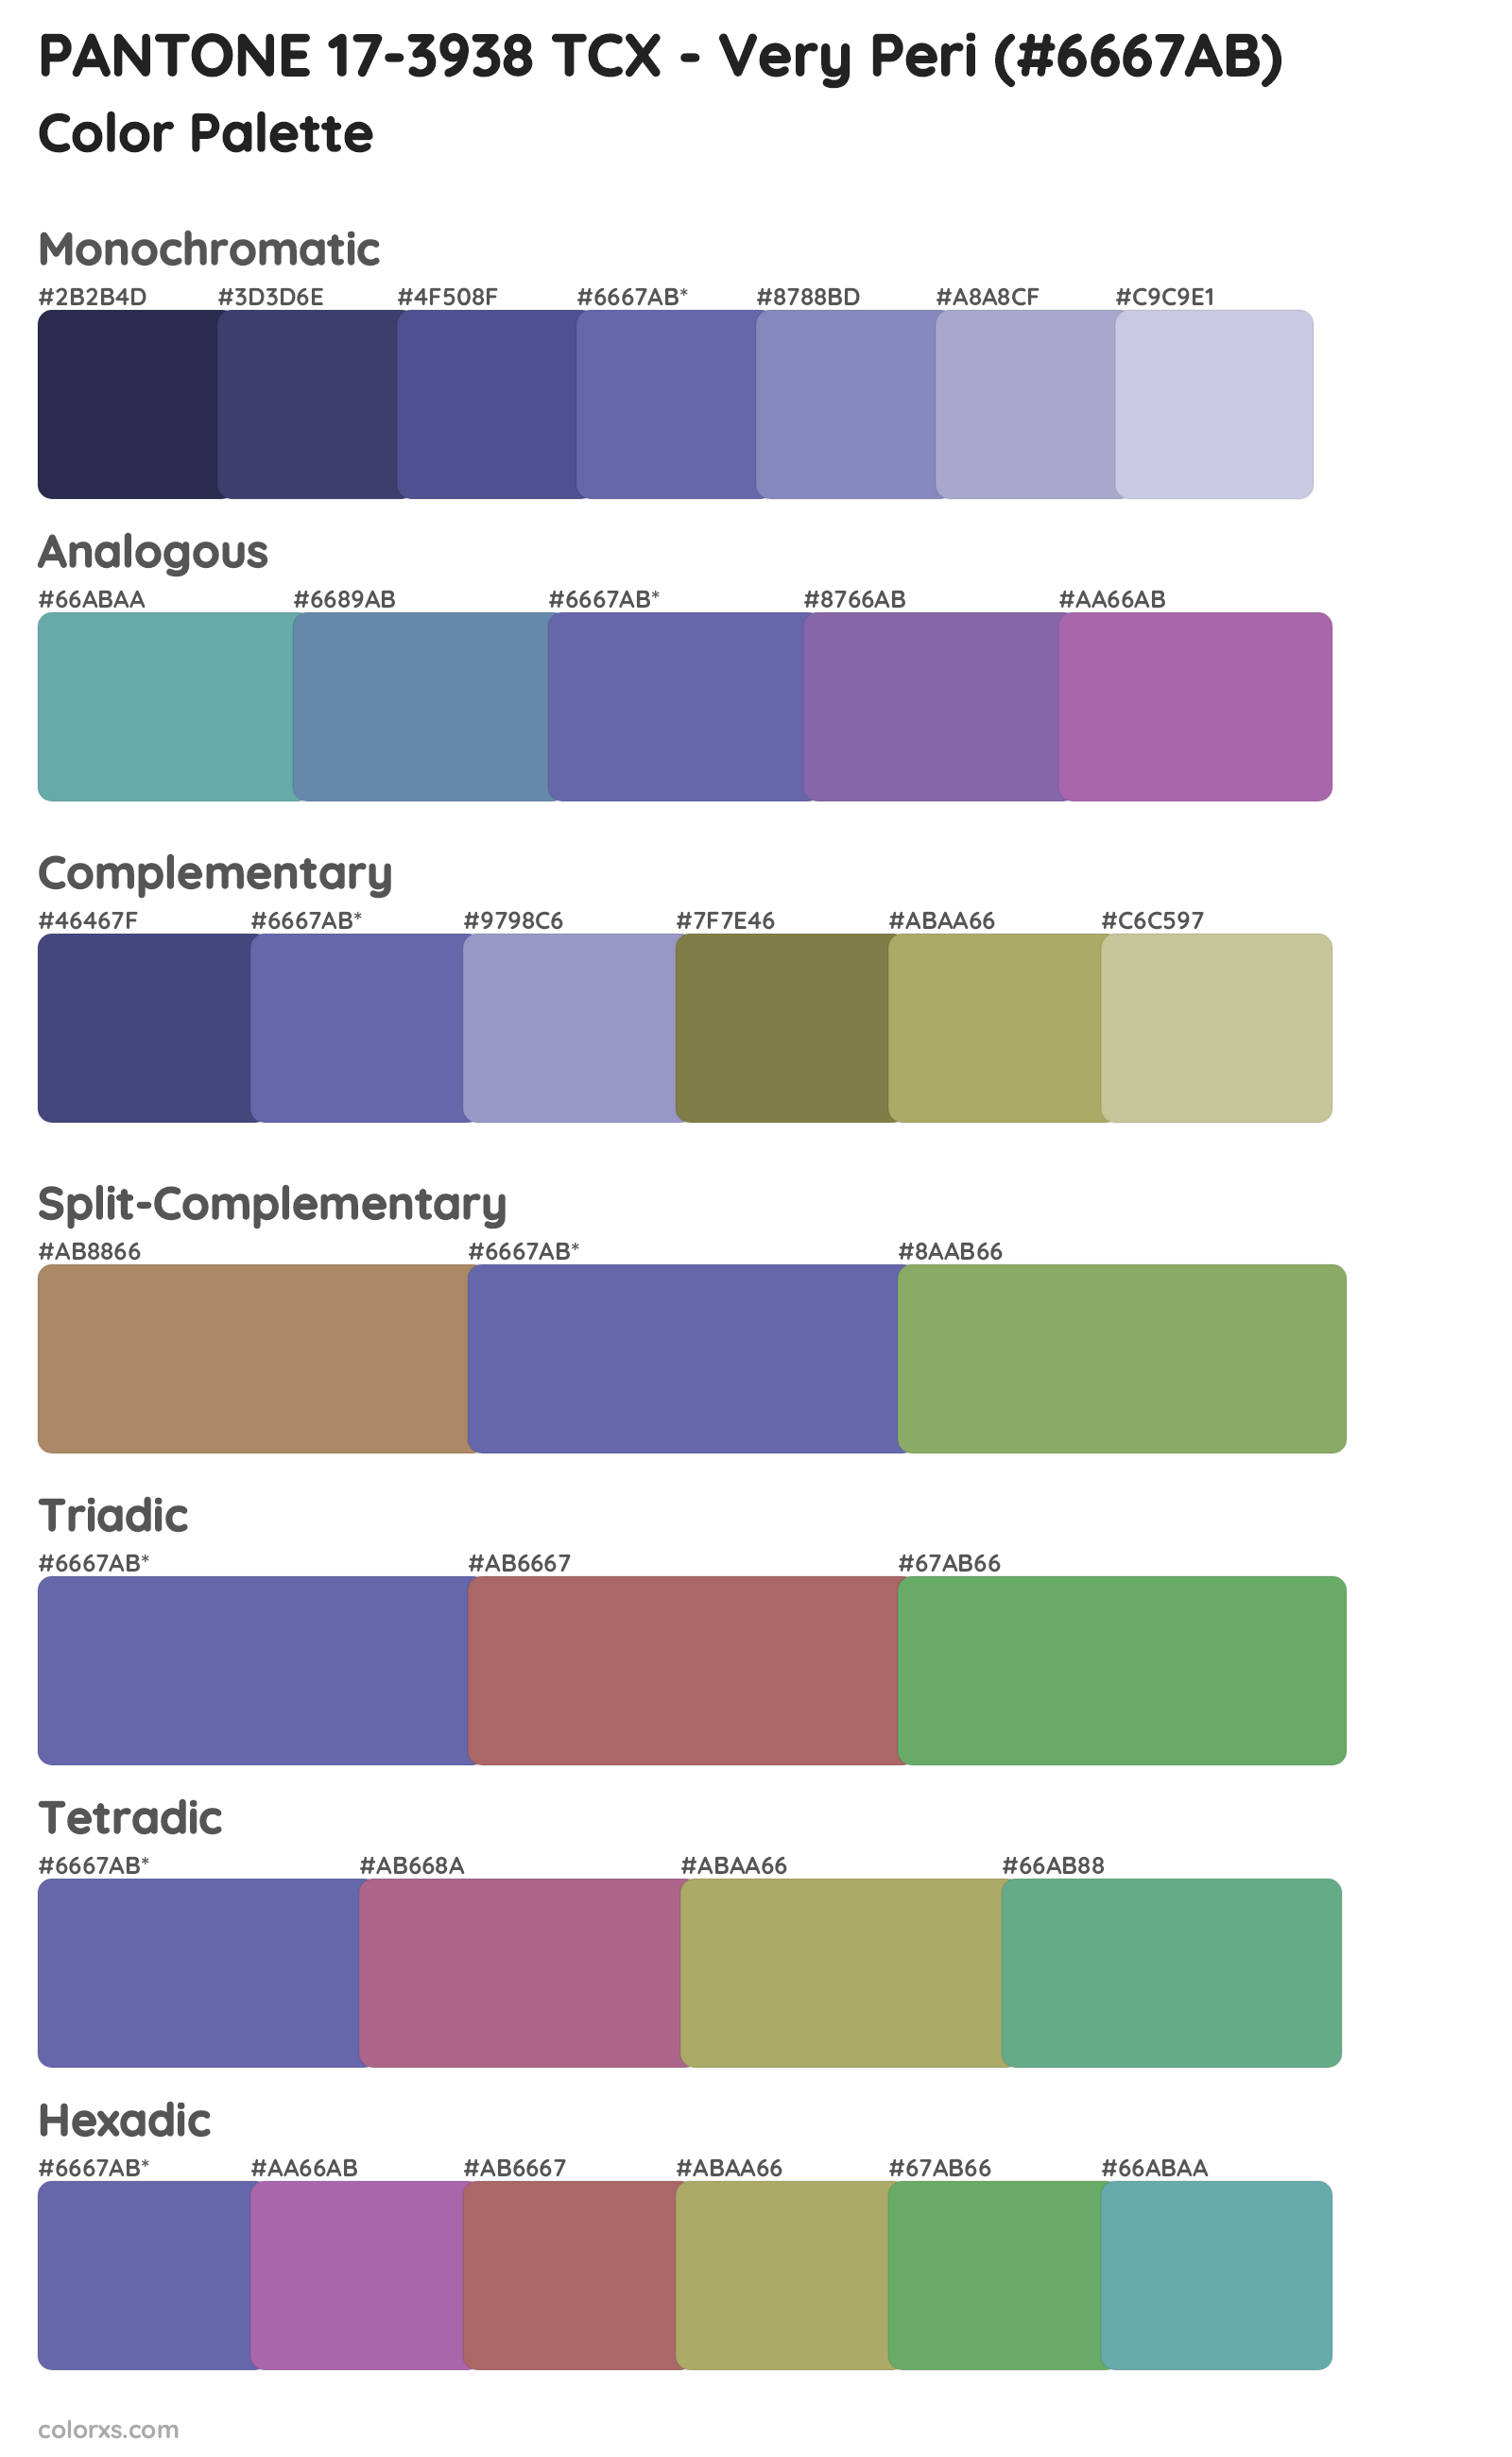 PANTONE 17-3938 TCX - Very Peri Color Scheme Palettes